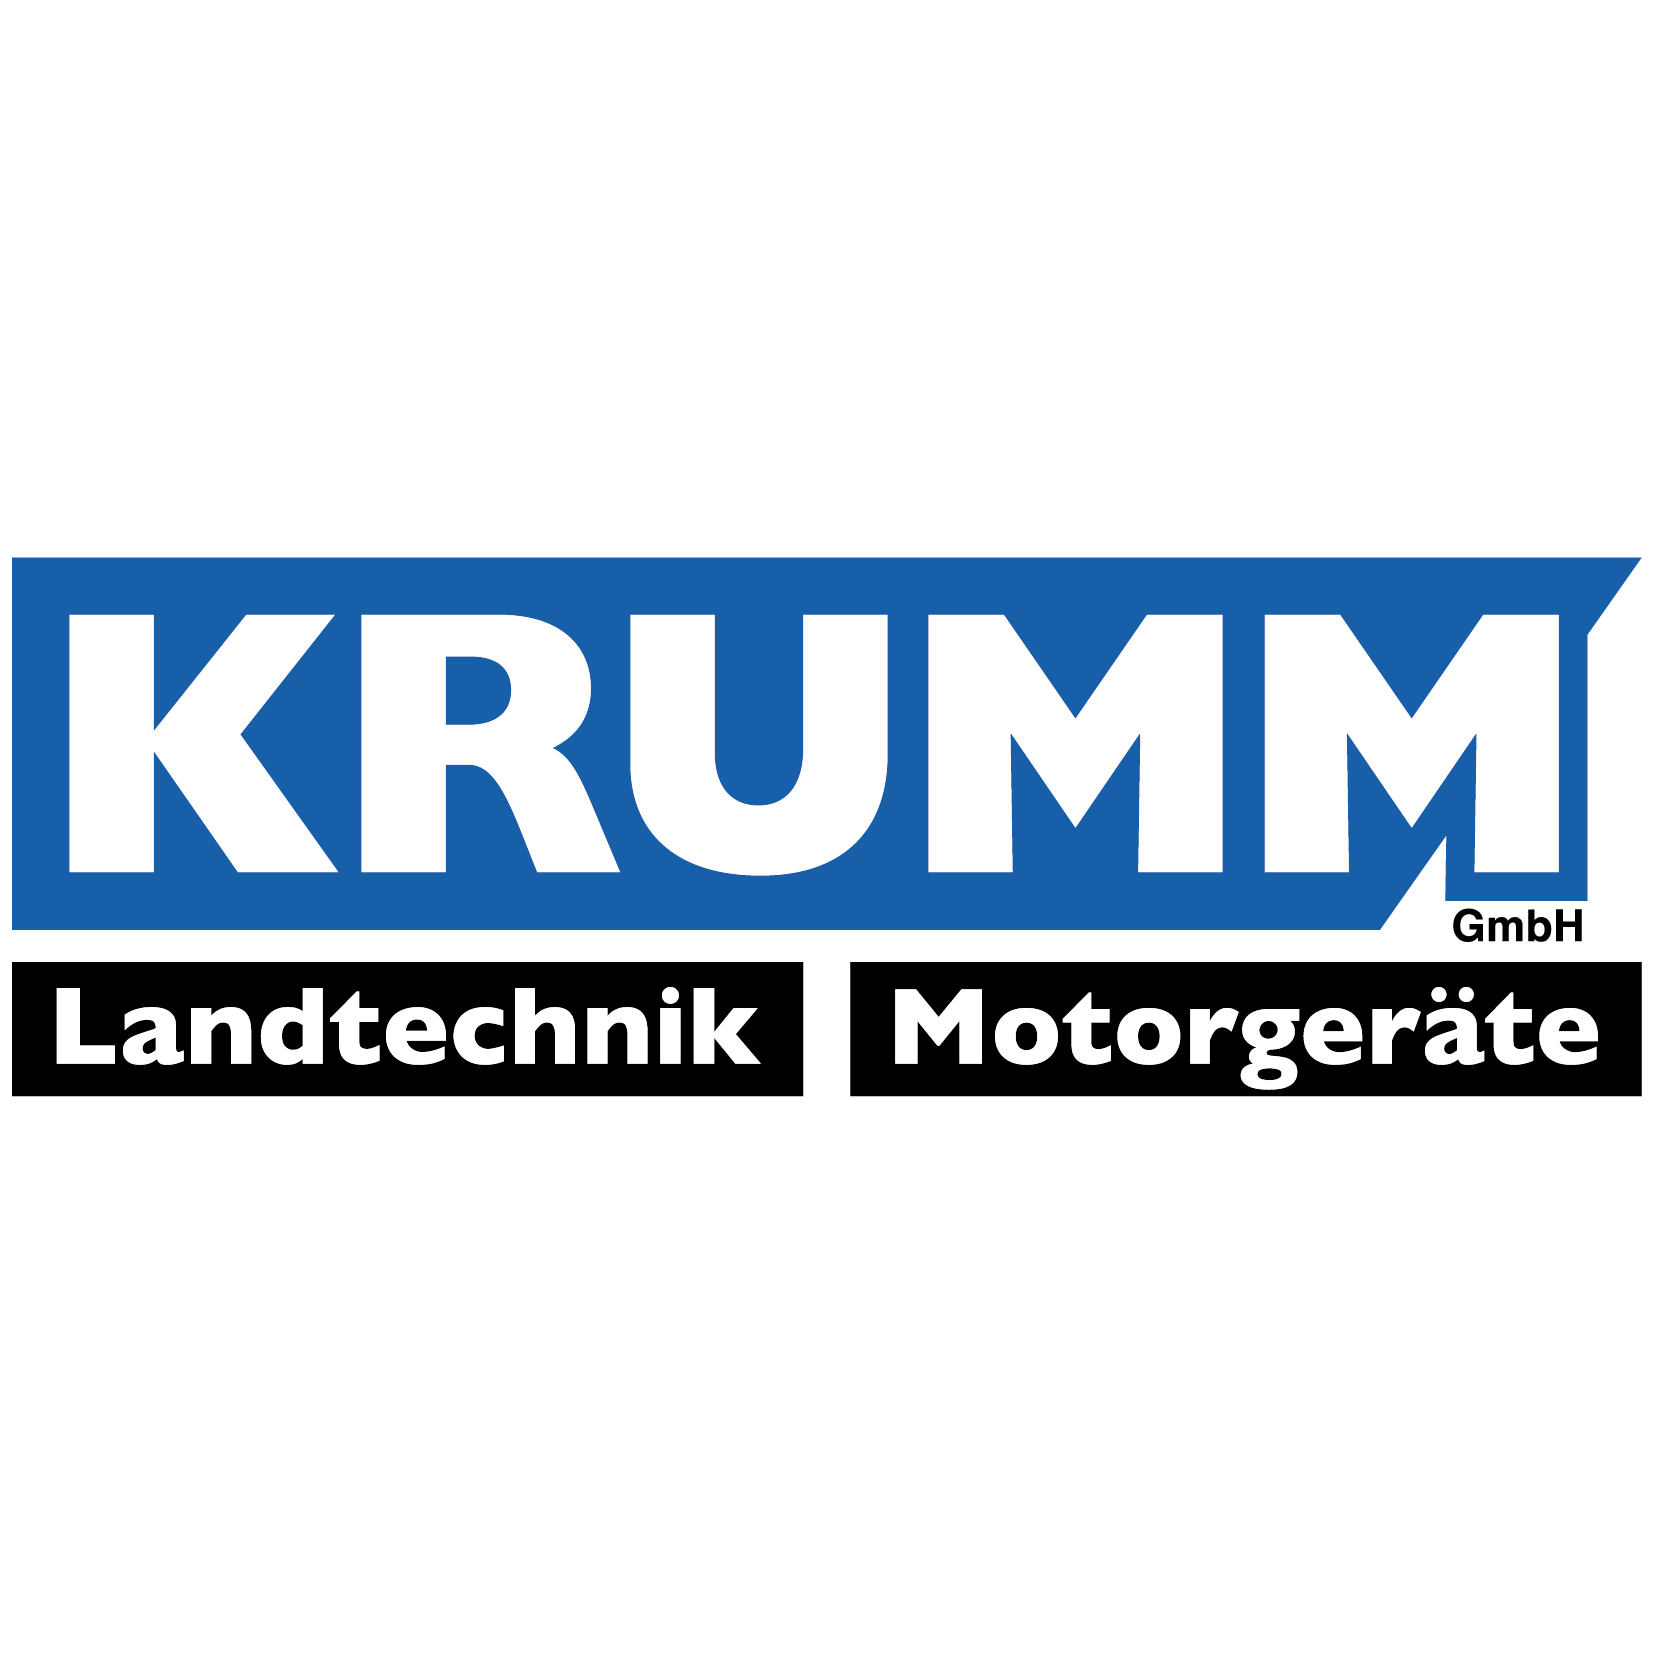 Krumm Landtechnik GmbH in Gundelfingen im Breisgau - Logo